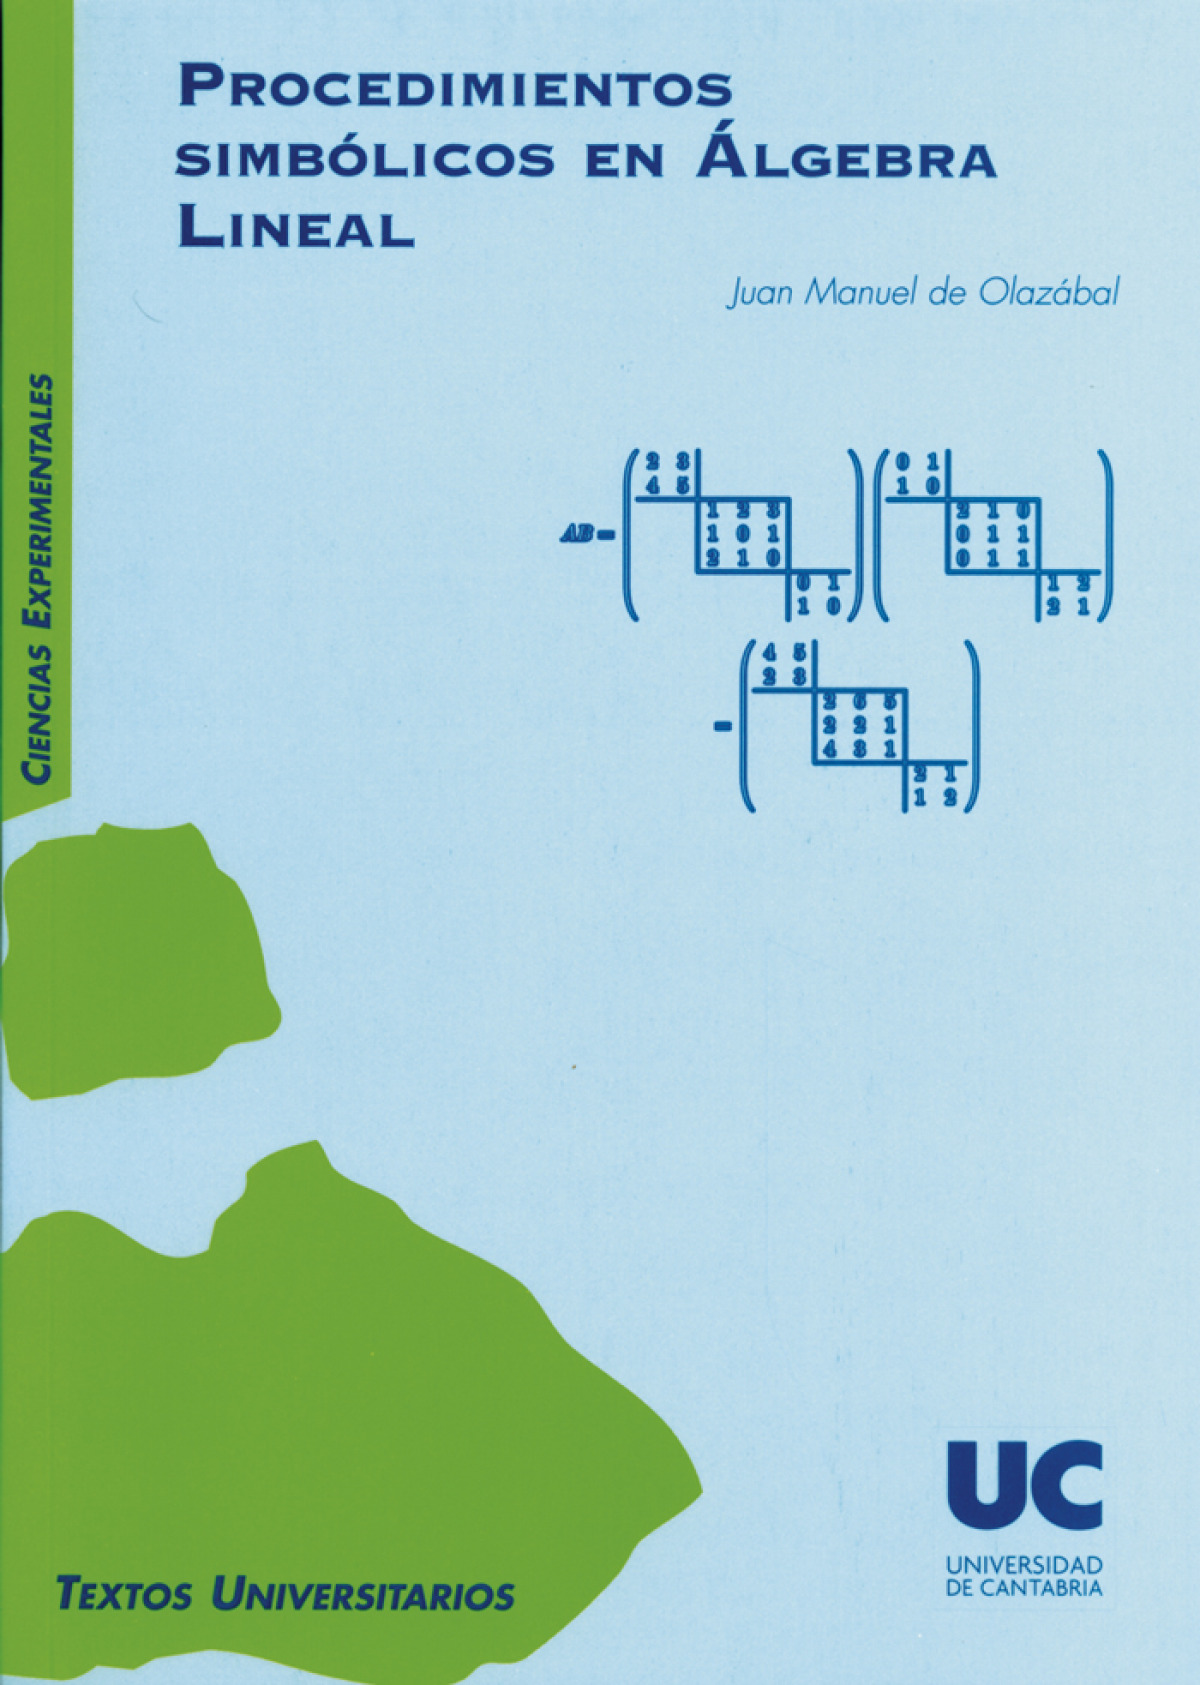 Procedimientos simbolicos en algebra lineal - Olazabal Malo De Molina, Juan Manuel De